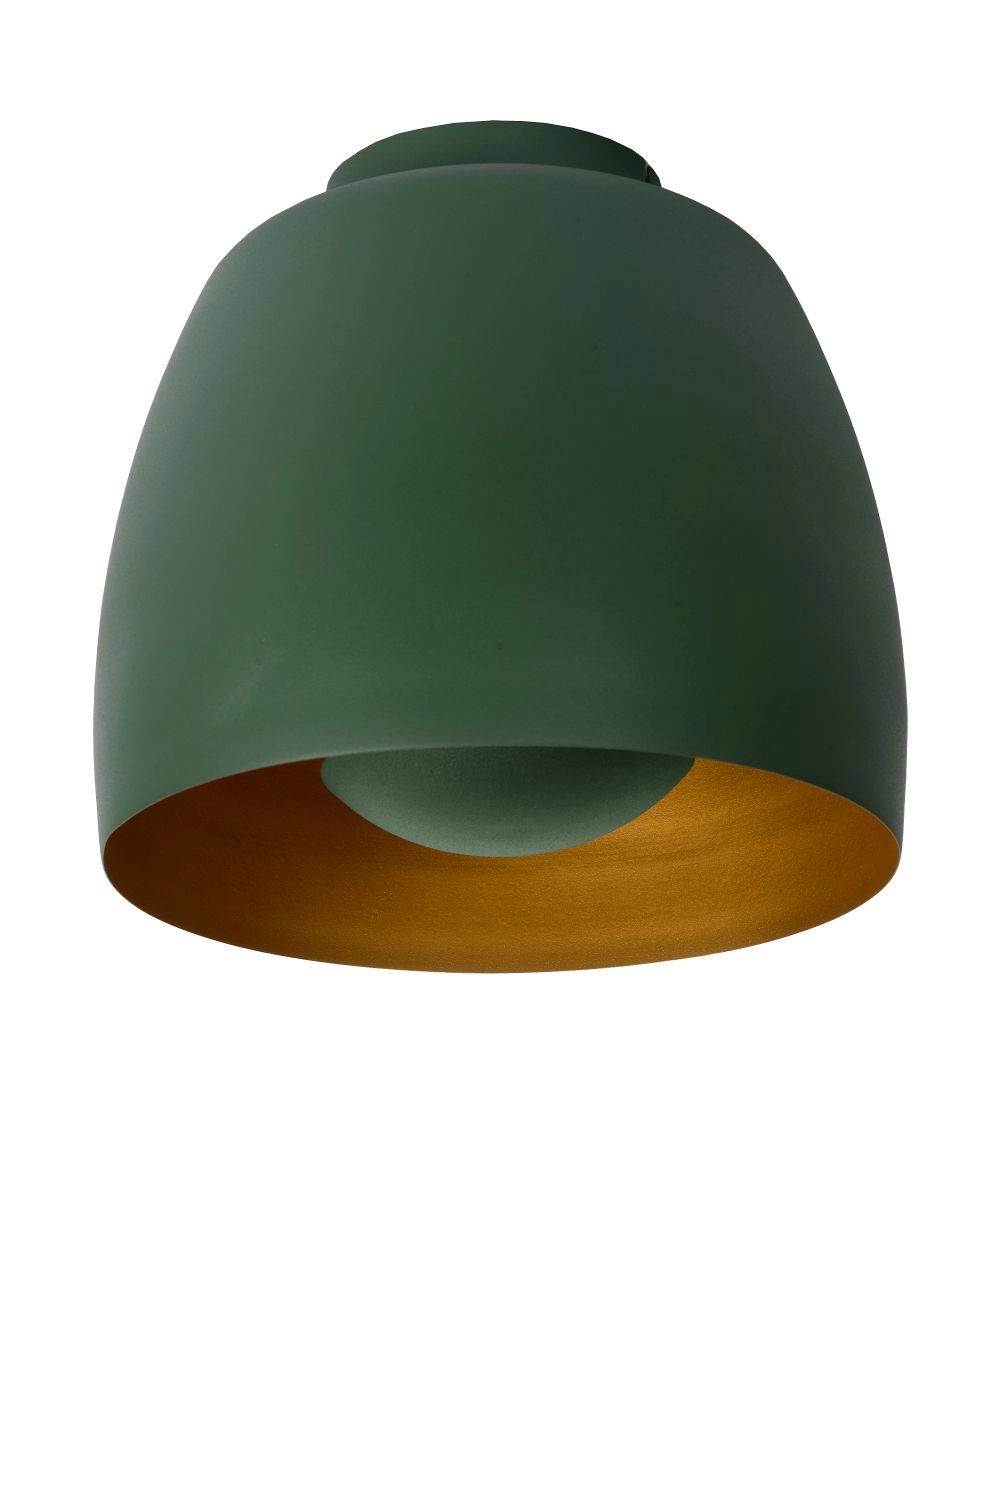 LU 30188/01/33 Lucide NOLAN - Flush ceiling light - Ø 24 cm - 1xE27 - Green